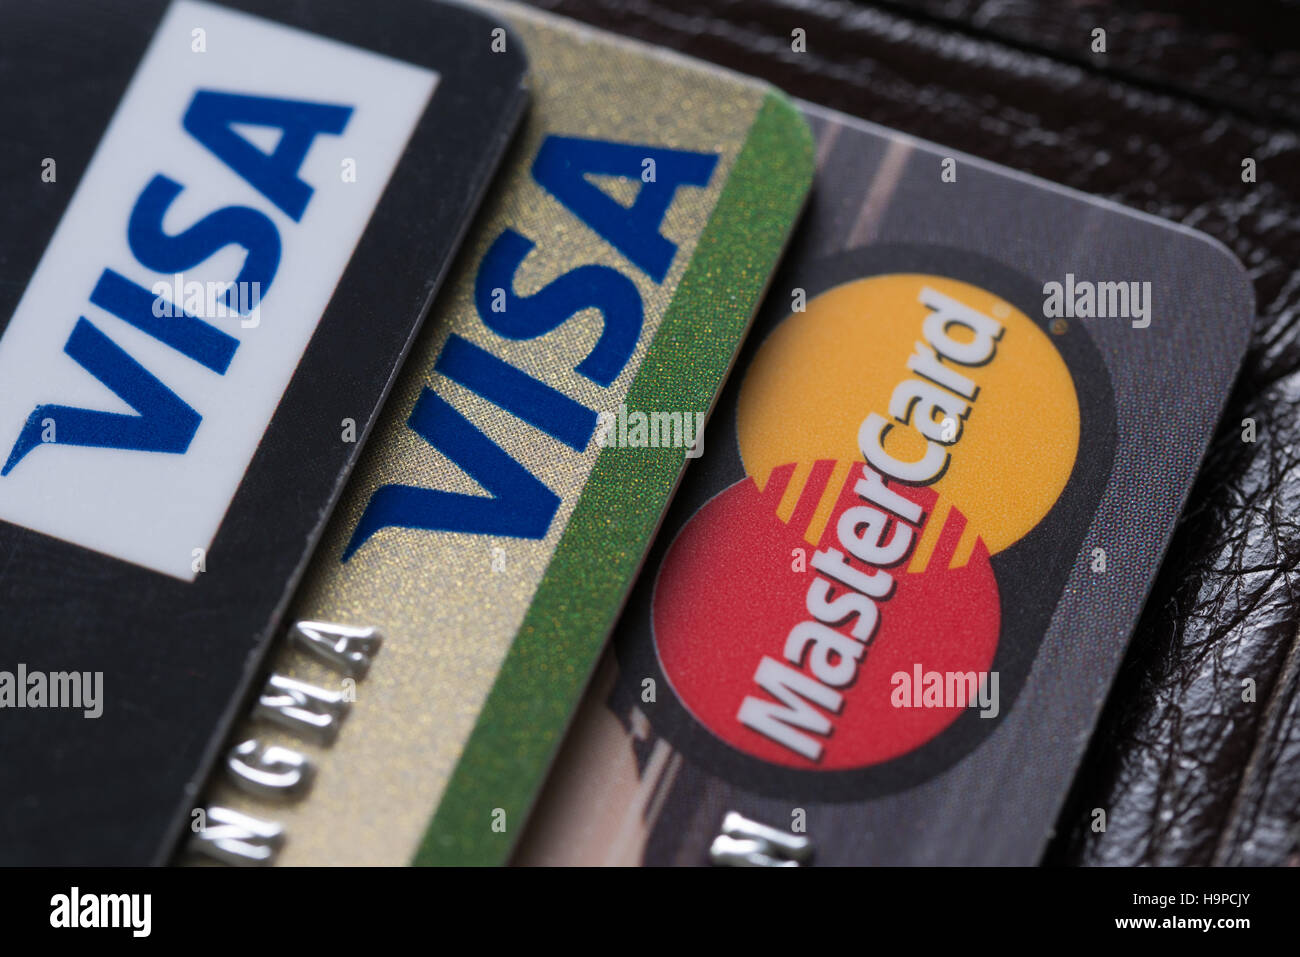 Bangkok, Thailand 25 feb 2016, close up of credit cards Stock Photo